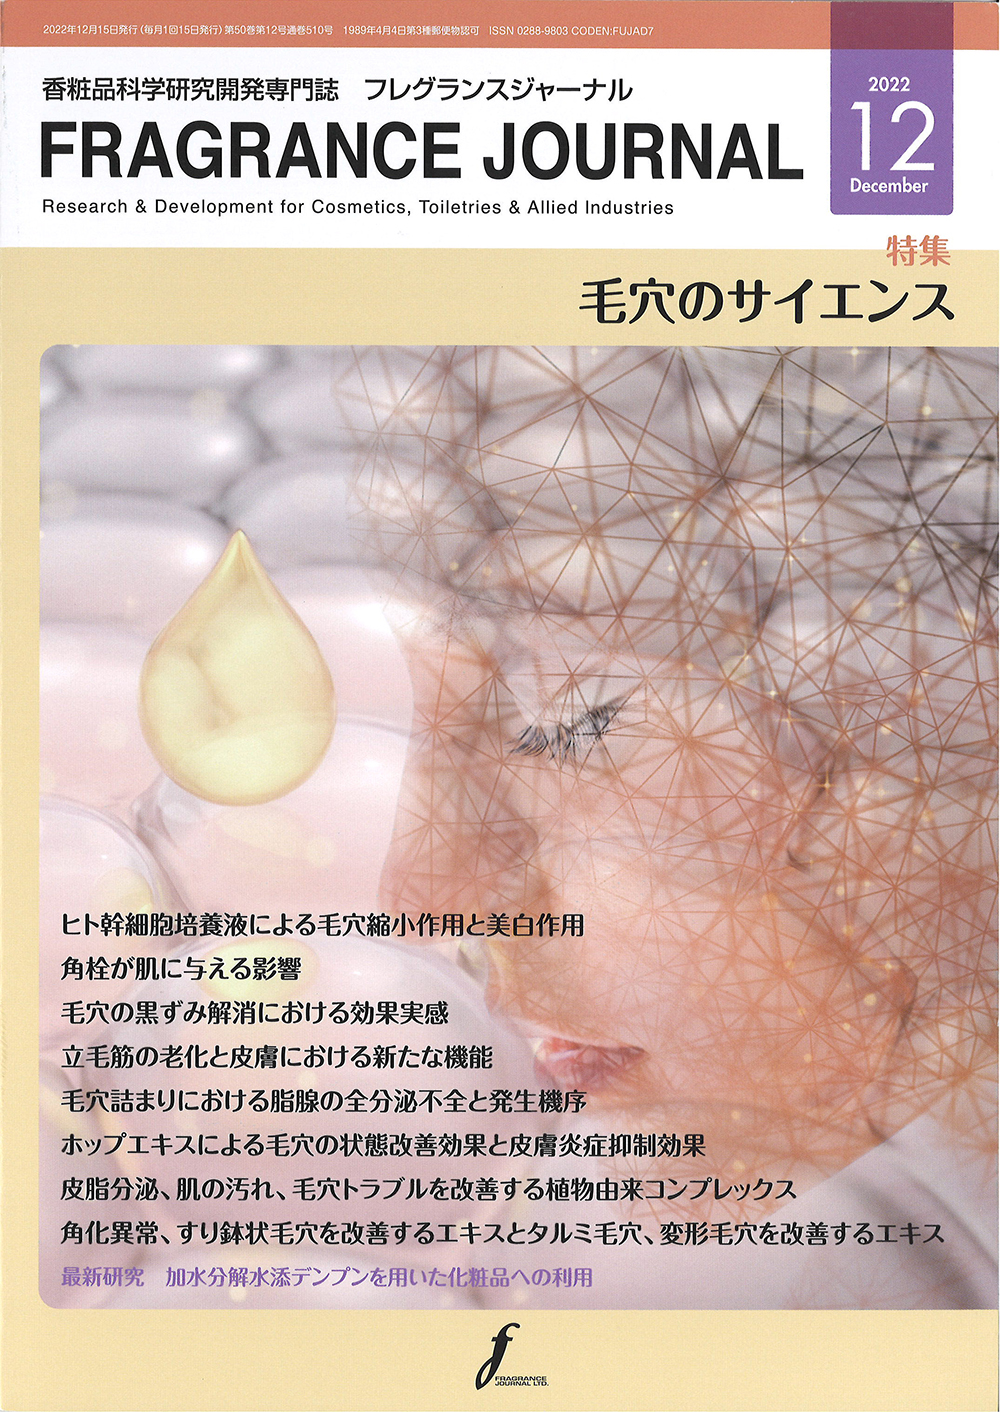 香粧品科学研究開発専門誌「FRAGRANCE JOURNAL」(2022年12月号)